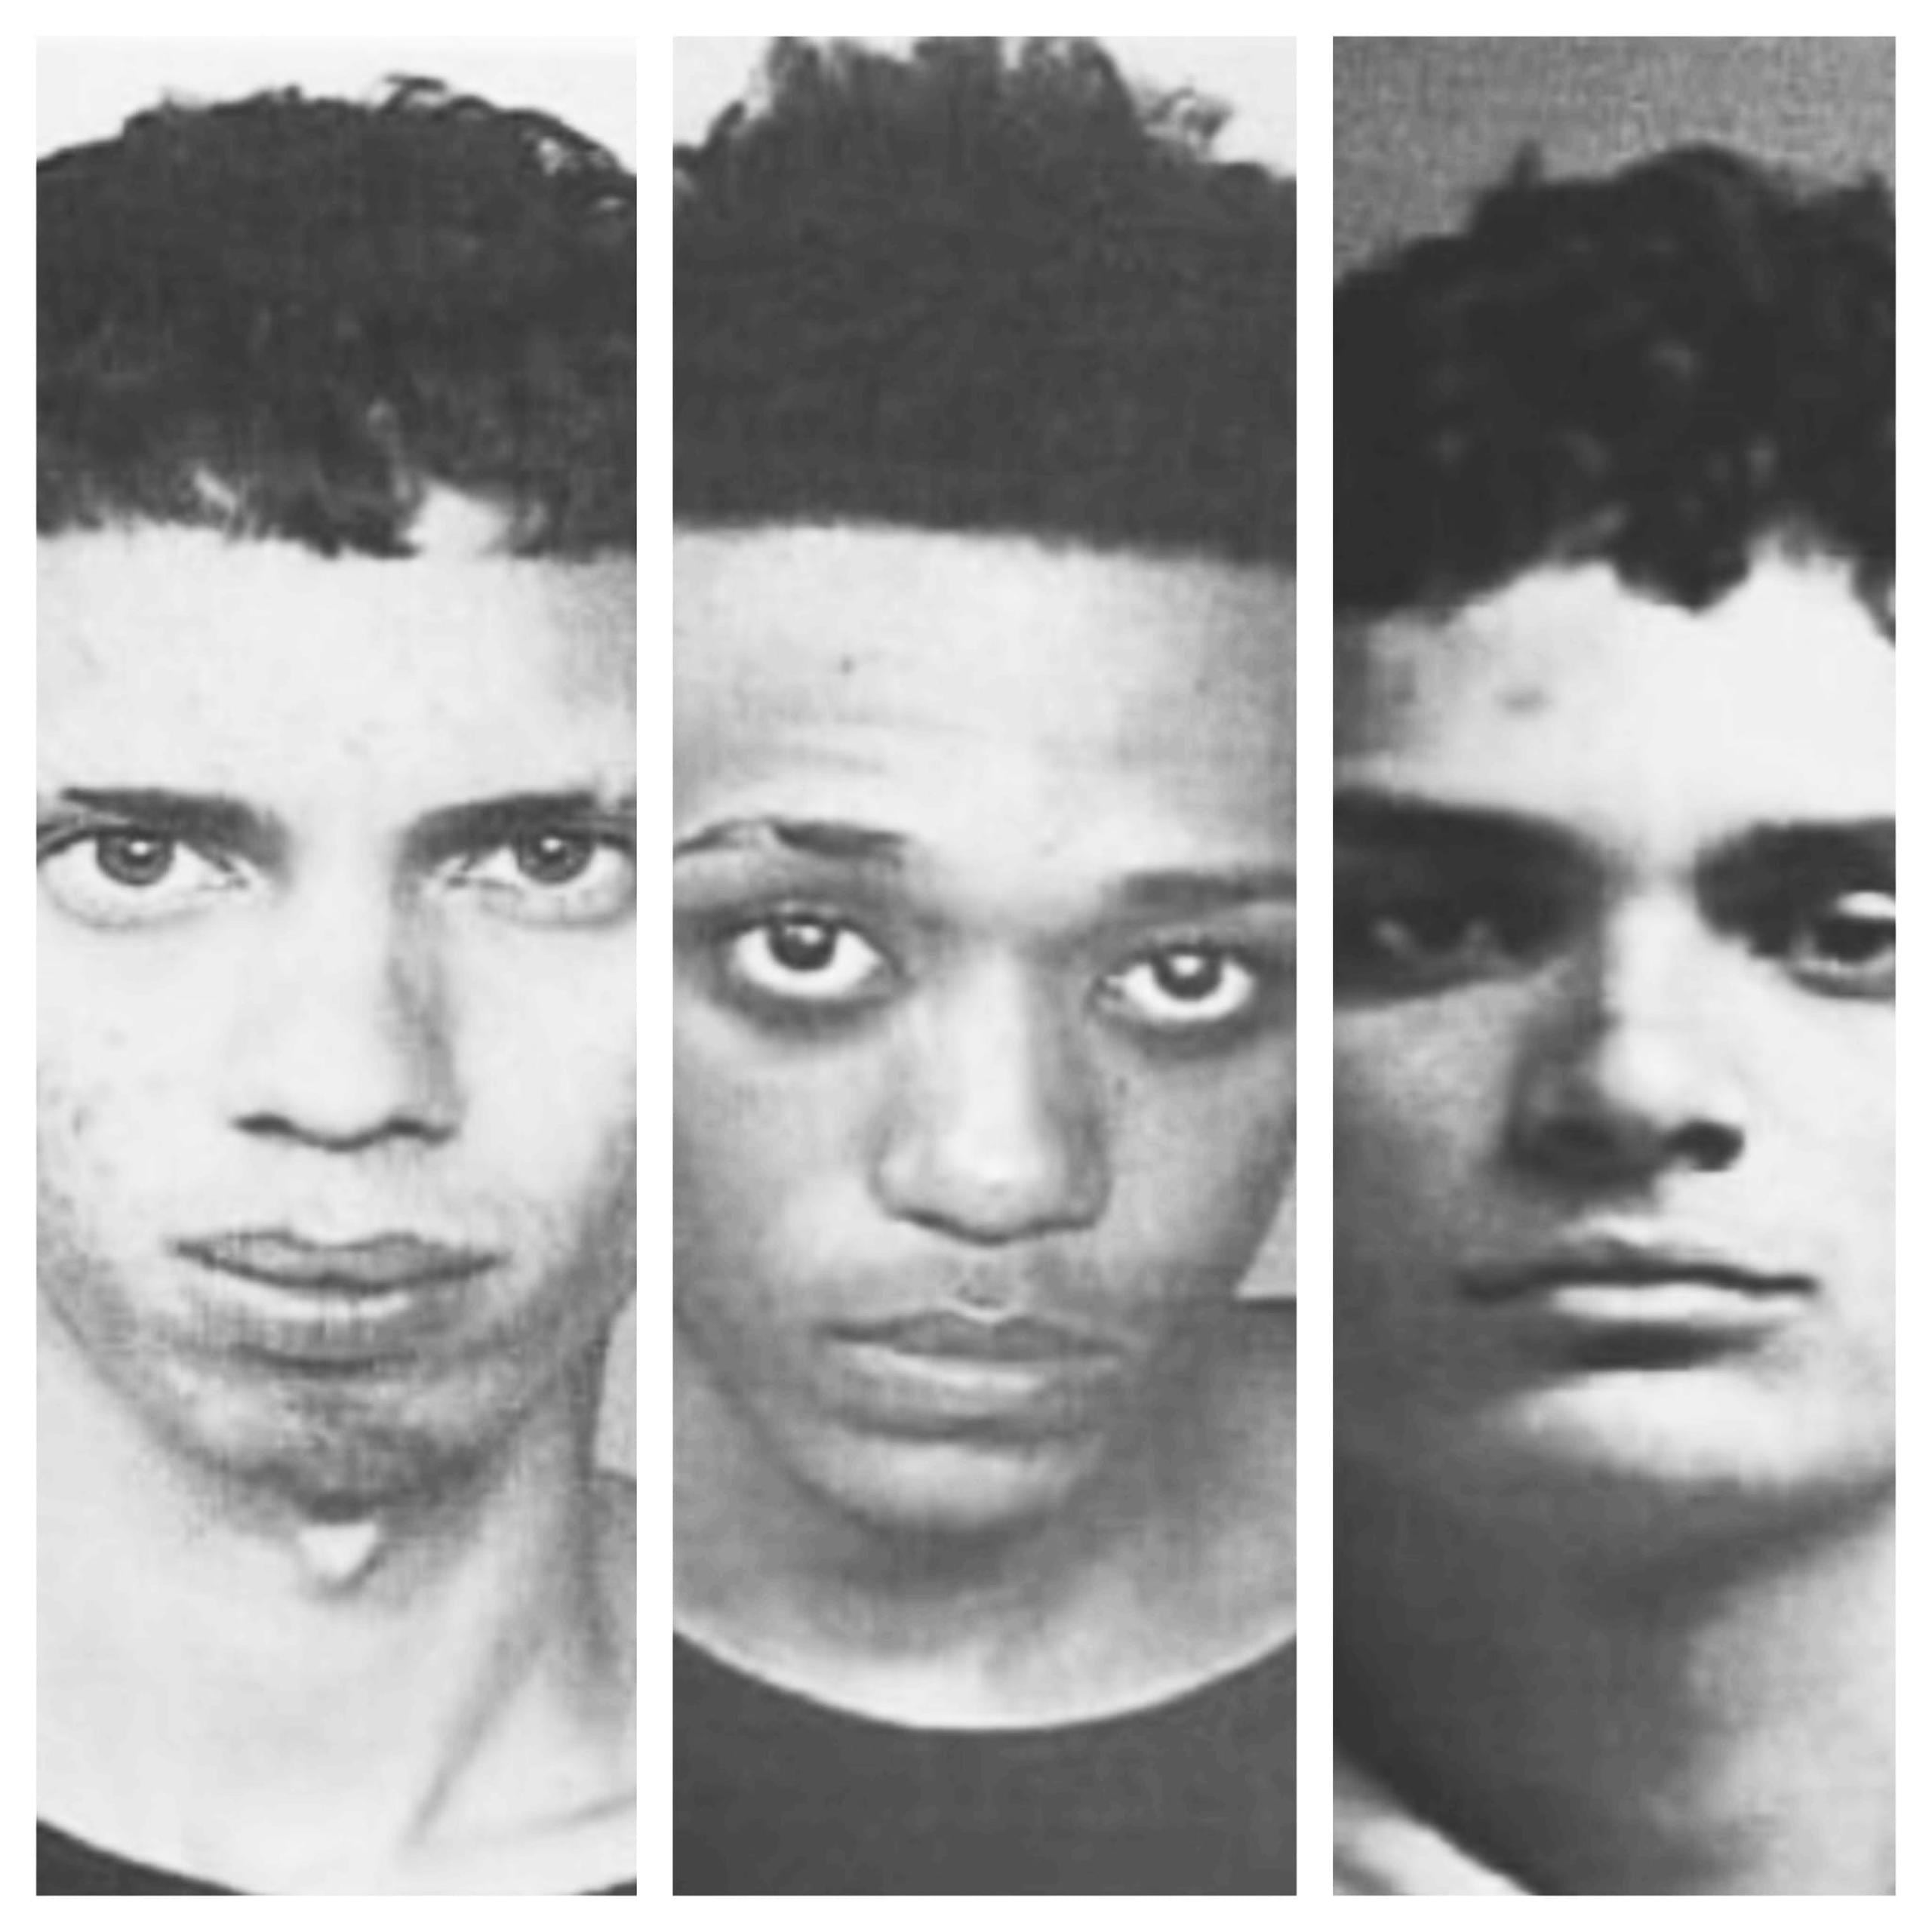 De izquierda a derecha: Yoniel Ramos Delgado, Henry A. Rodríguez Kelly y Luis G. Olivo Ortiz, quedaron en custodia del FBI tras ser arrestados por un "carjacking".